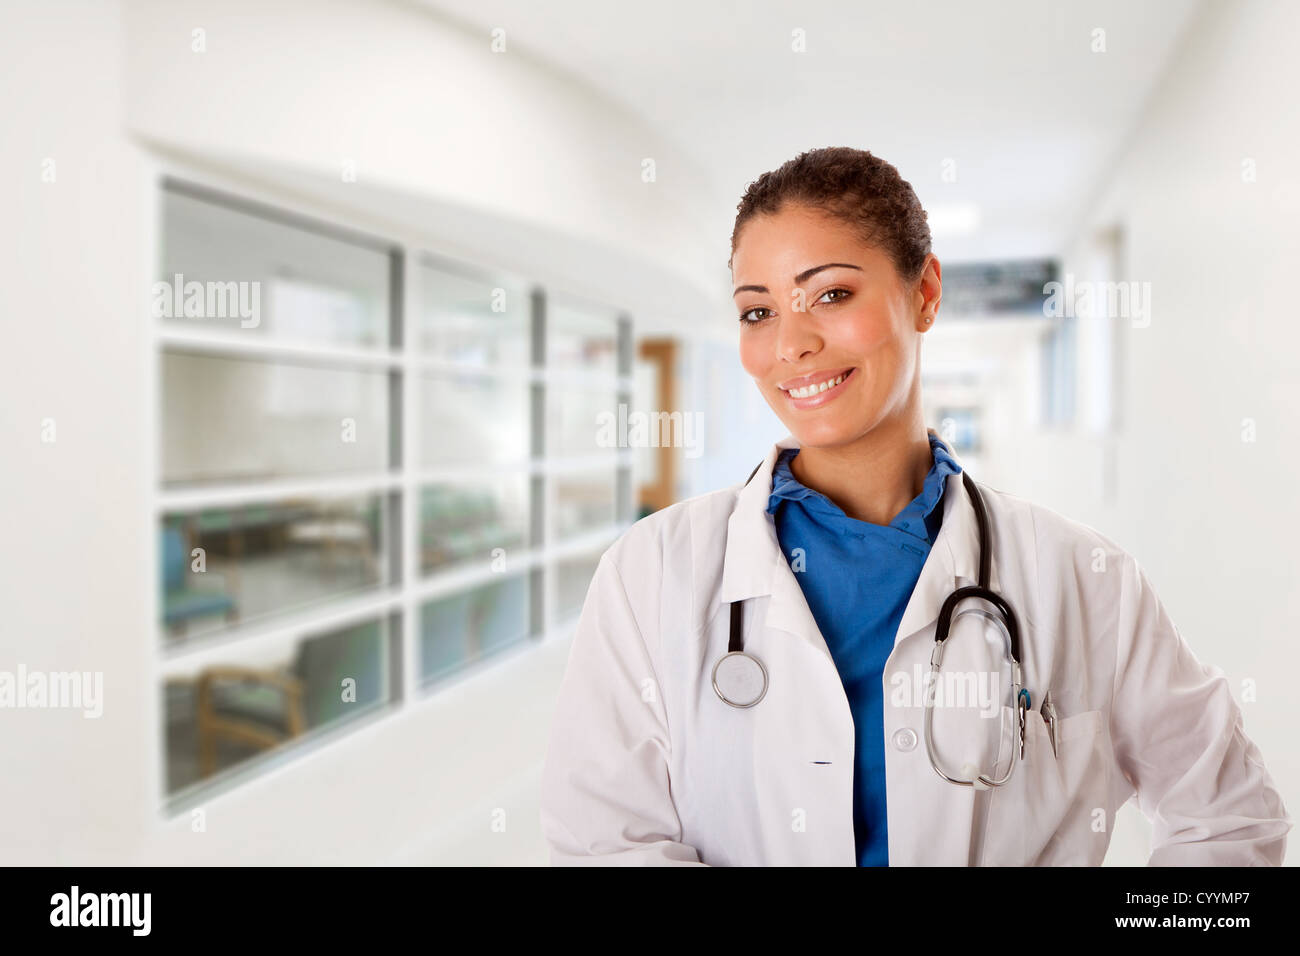 Glücklich lächelnd Ärztin Arzt Krankenschwester im Krankenhaus Flur Halle Weg vor Patienten Beratung Wartezimmer stehen Stockfoto